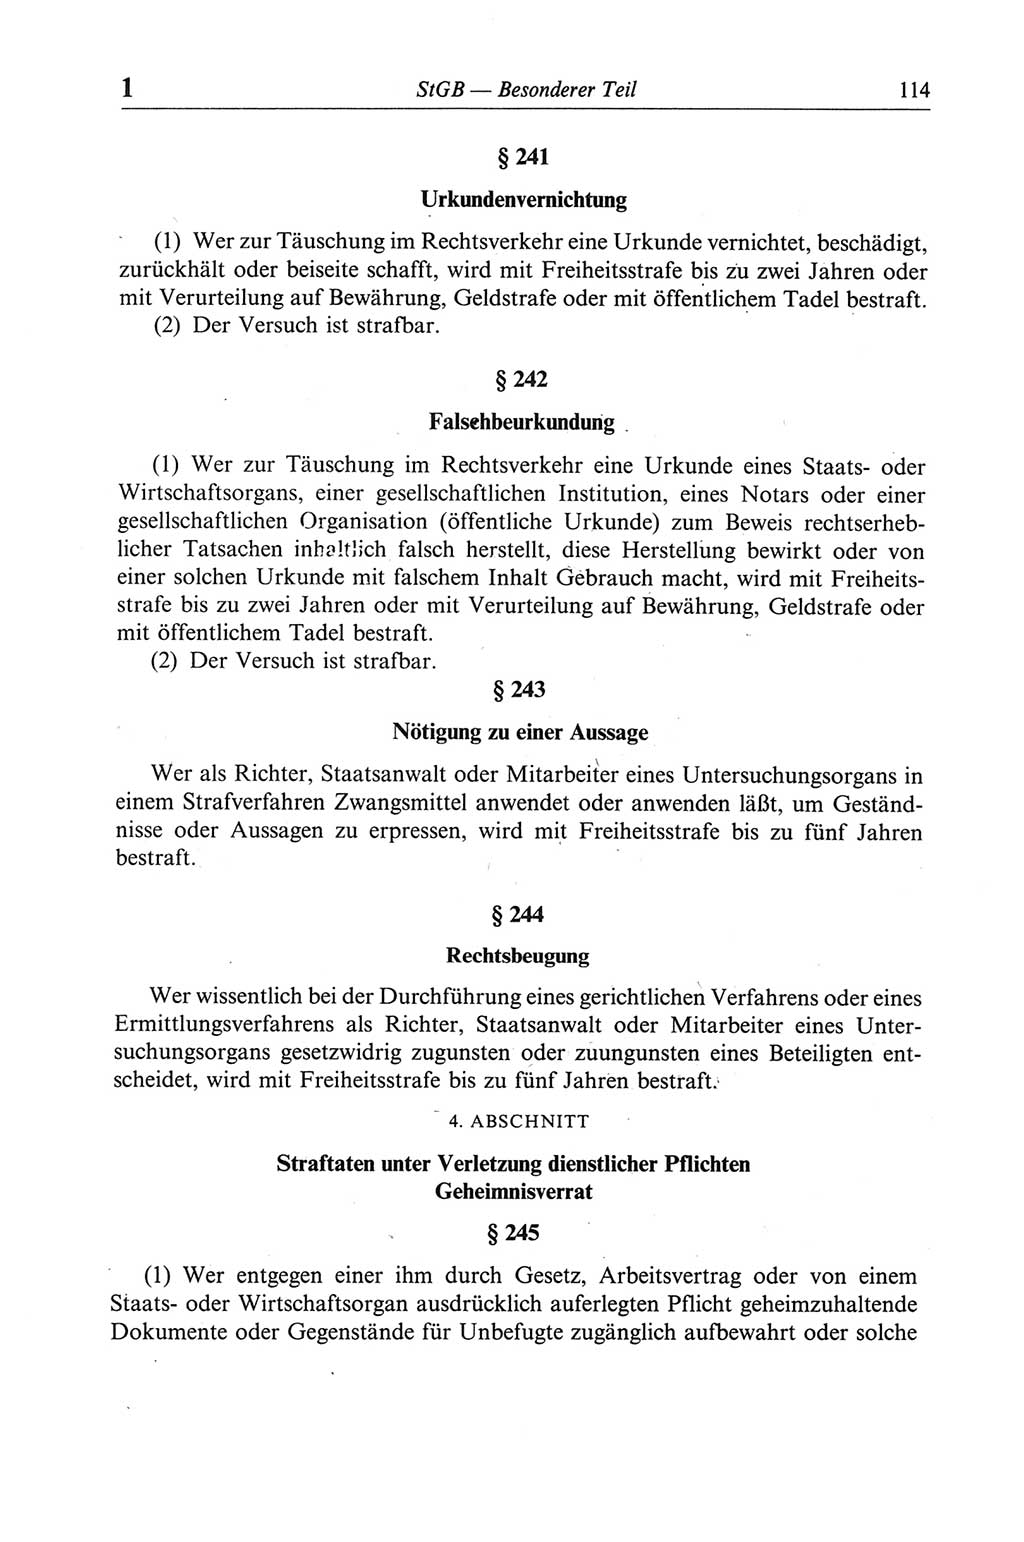 Strafgesetzbuch (StGB) der Deutschen Demokratischen Republik (DDR) und angrenzende Gesetze und Bestimmungen 1968, Seite 114 (StGB Ges. Best. DDR 1968, S. 114)